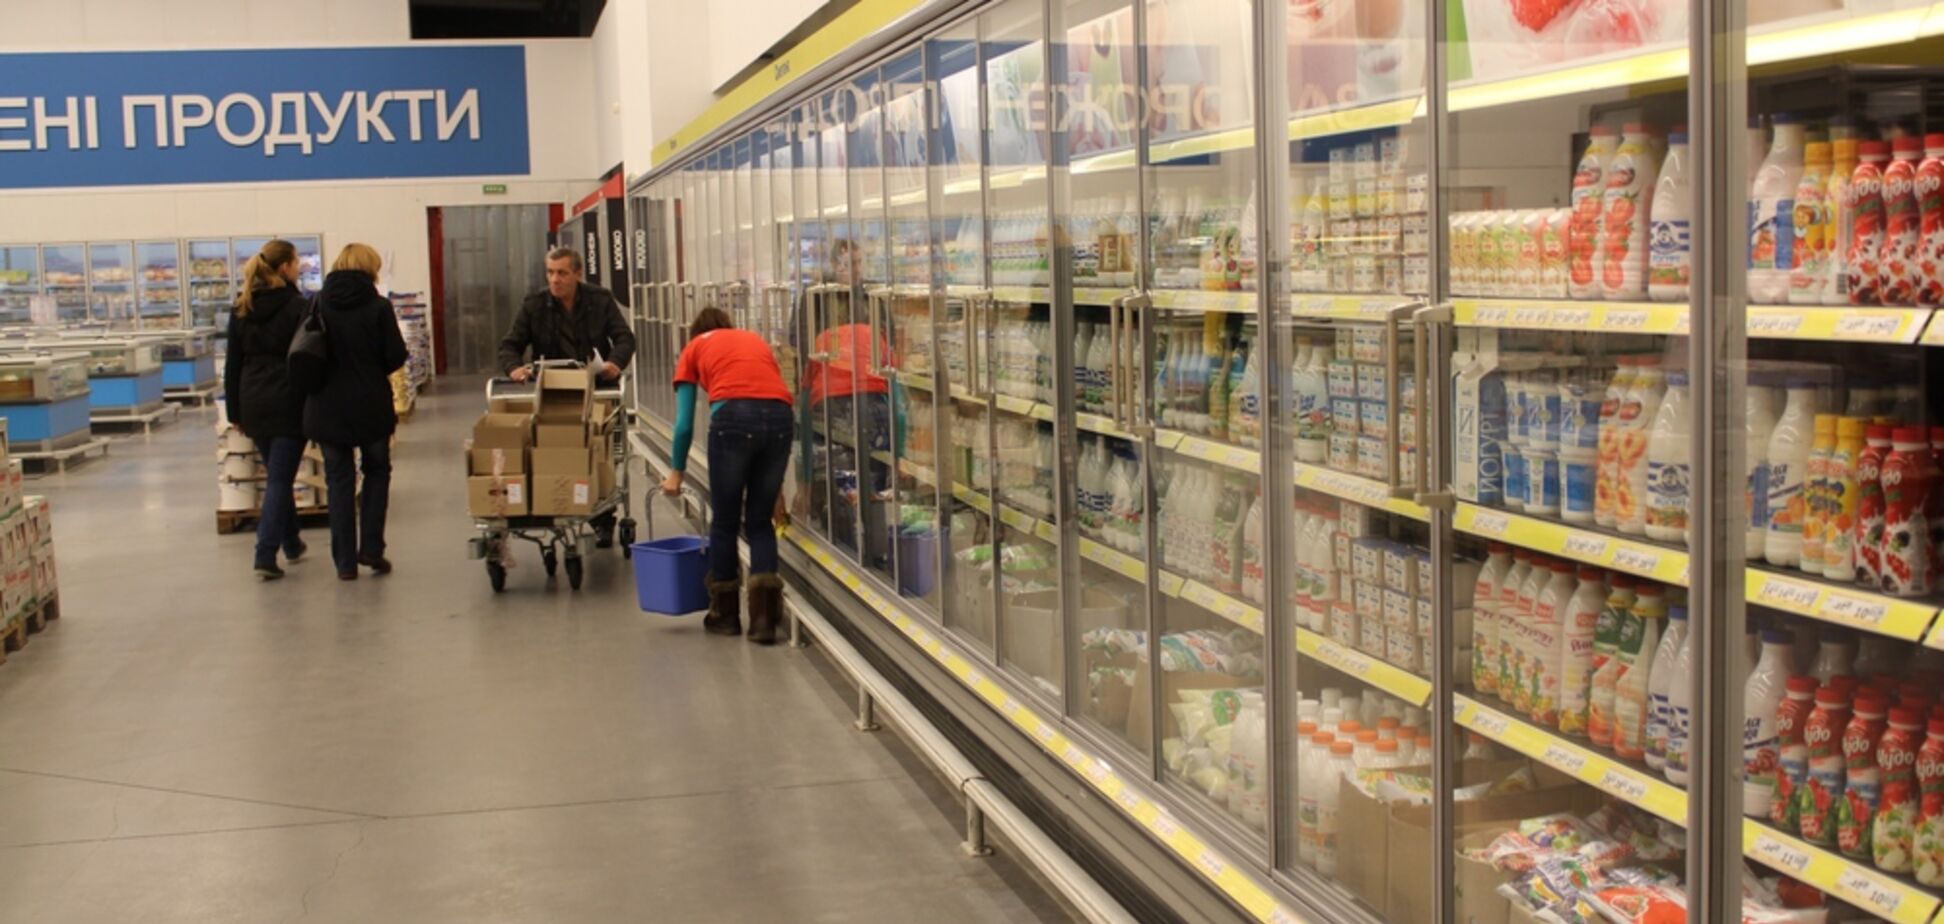 Нет цензурных слов: популярный гипермаркет угодил в скандал из-за символики России